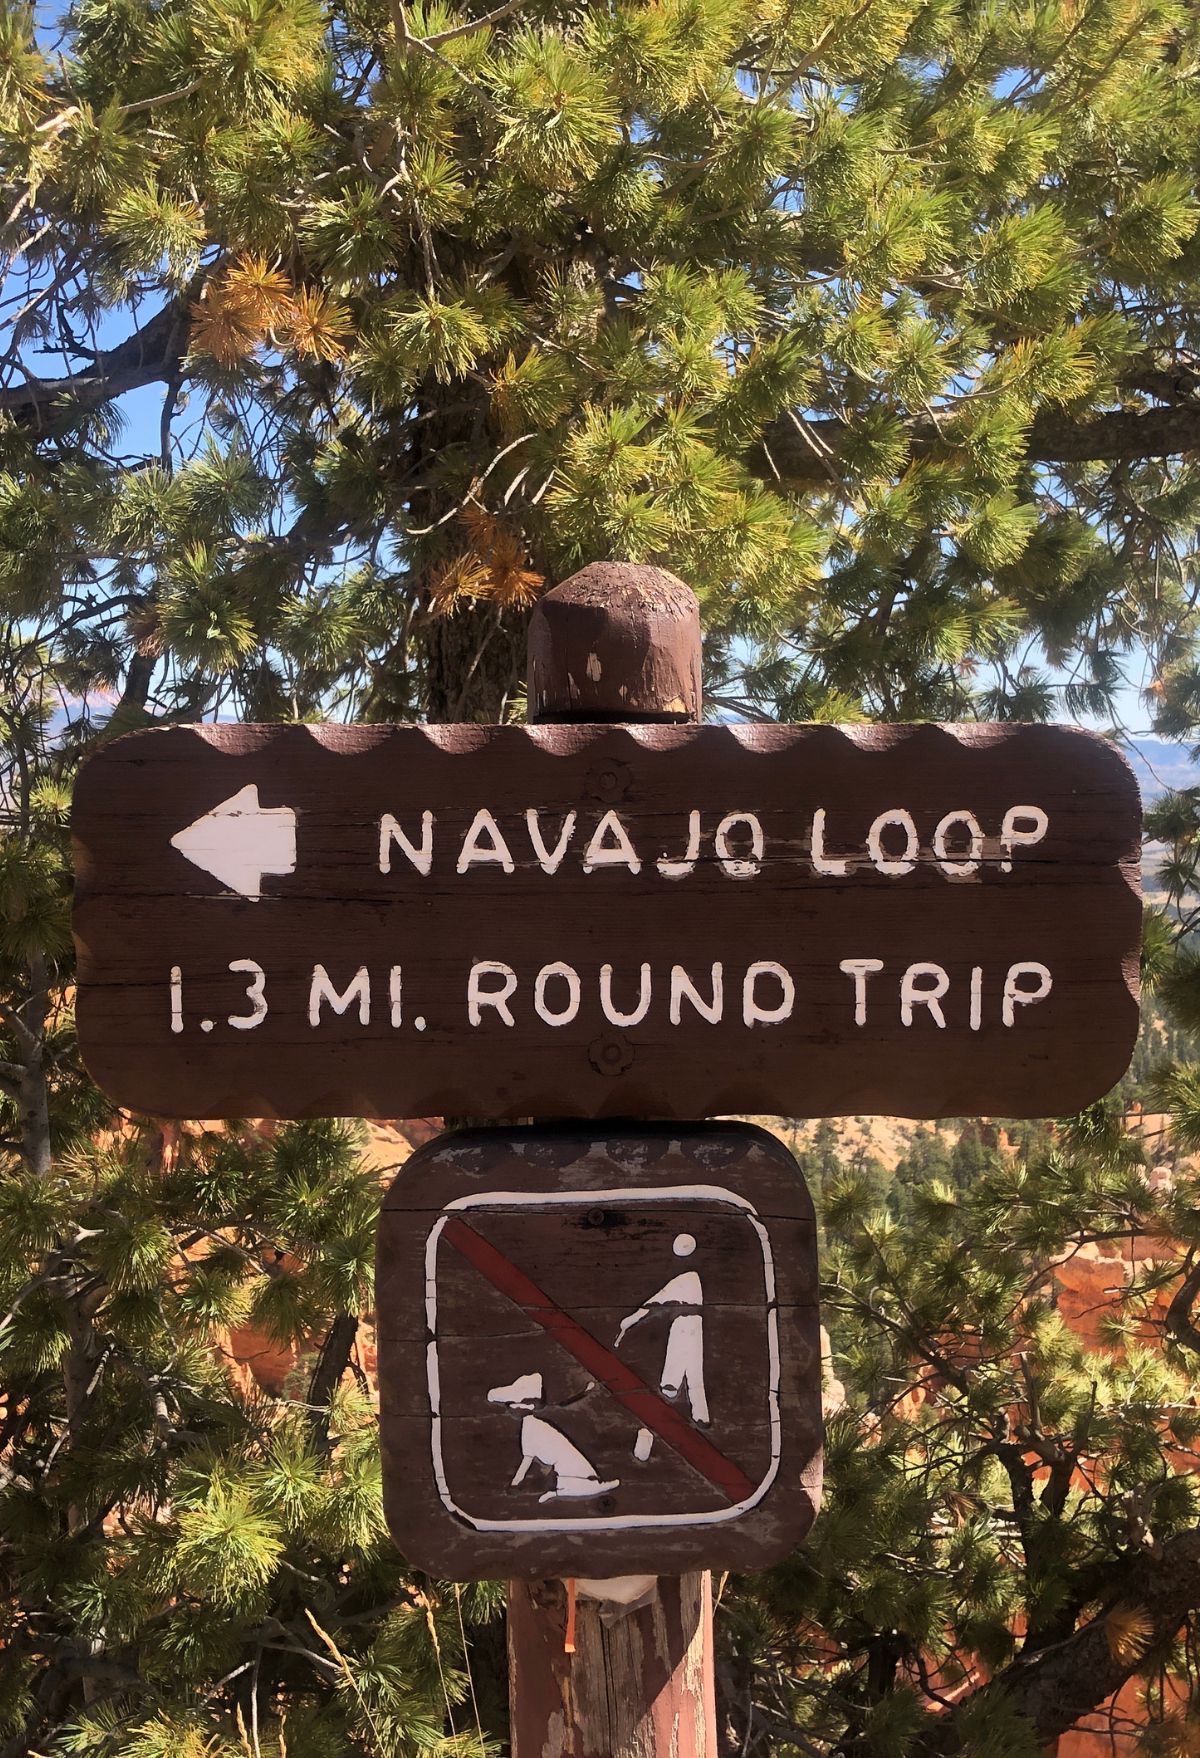 Navajo loop trail sign. Bryce Canyon National Park